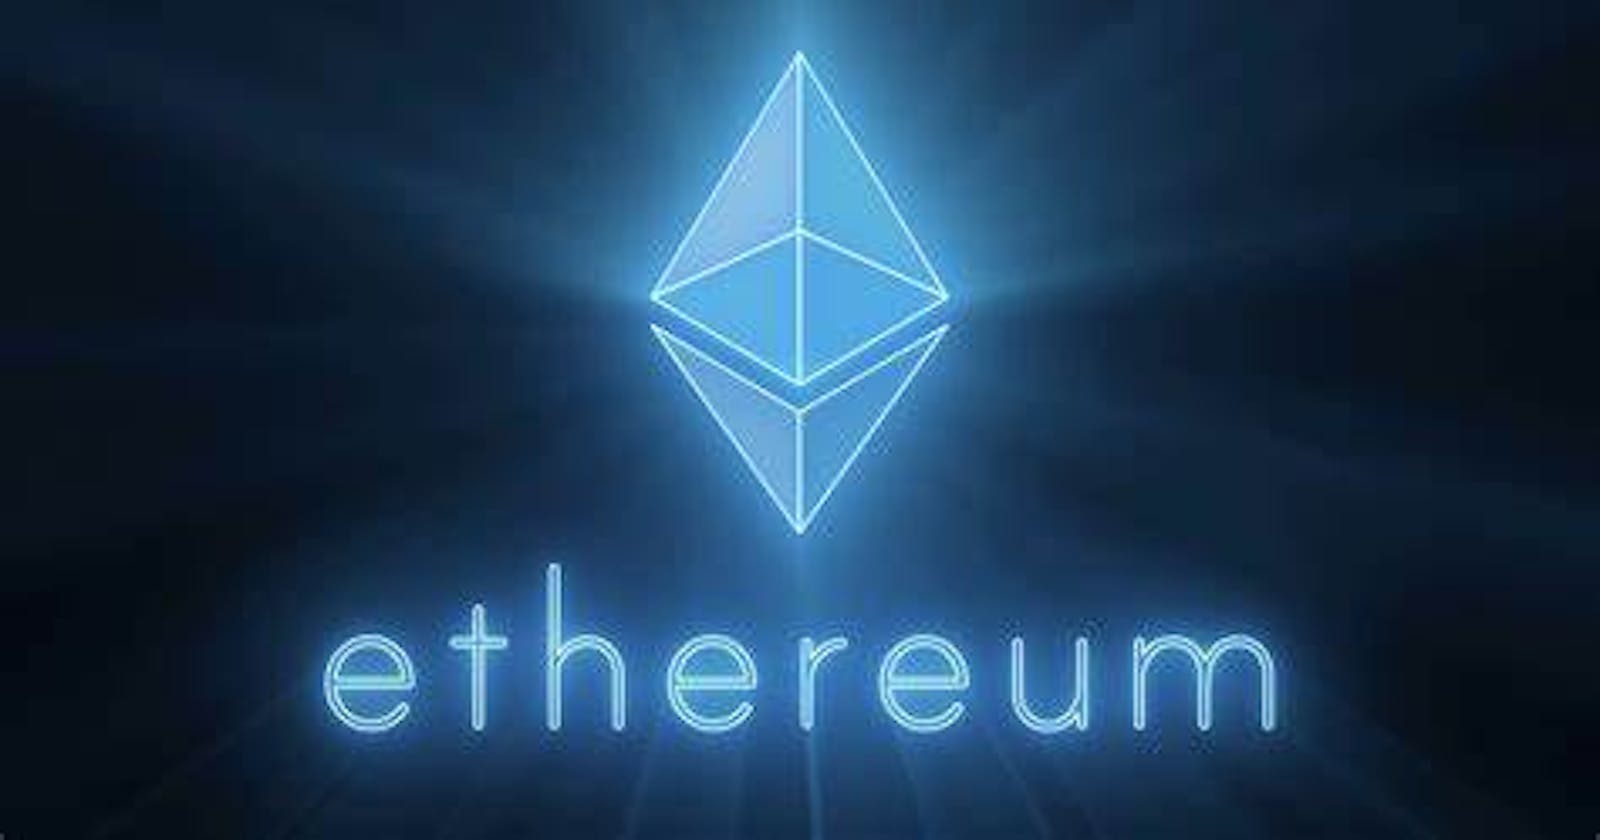 Brief information about Ethereum...